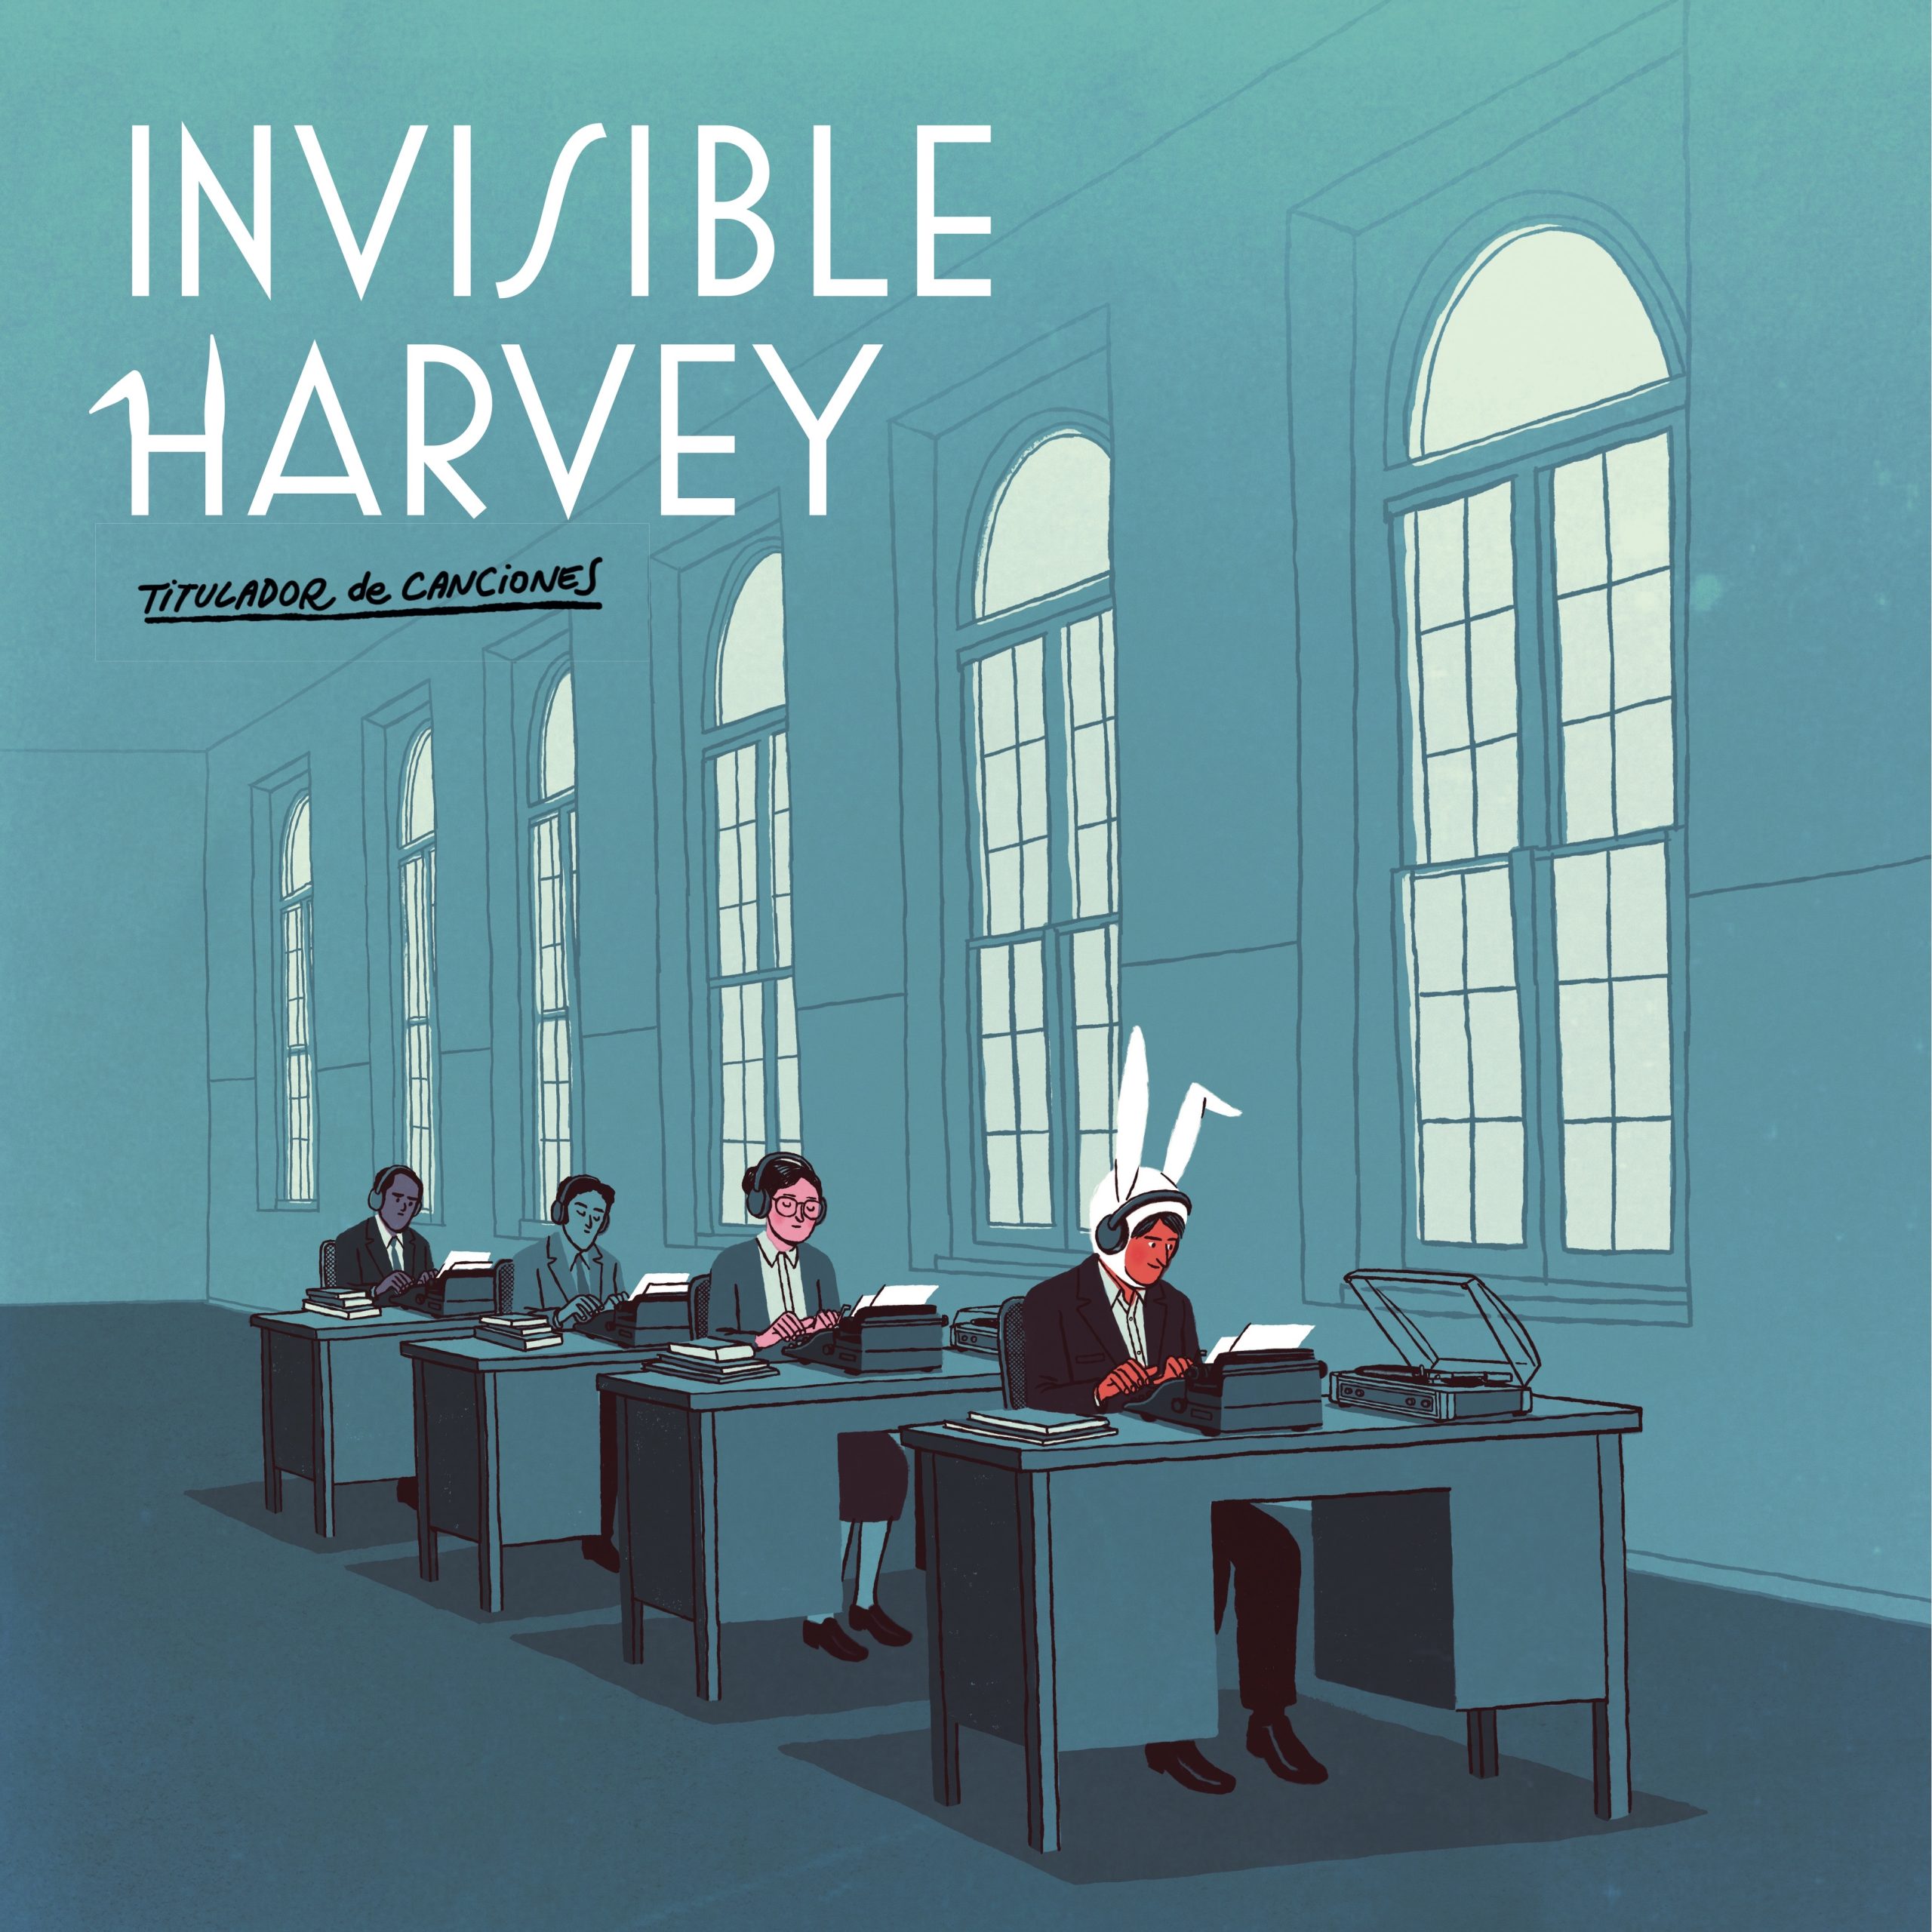 Invisible Harvey "Titulador de canciones" LP